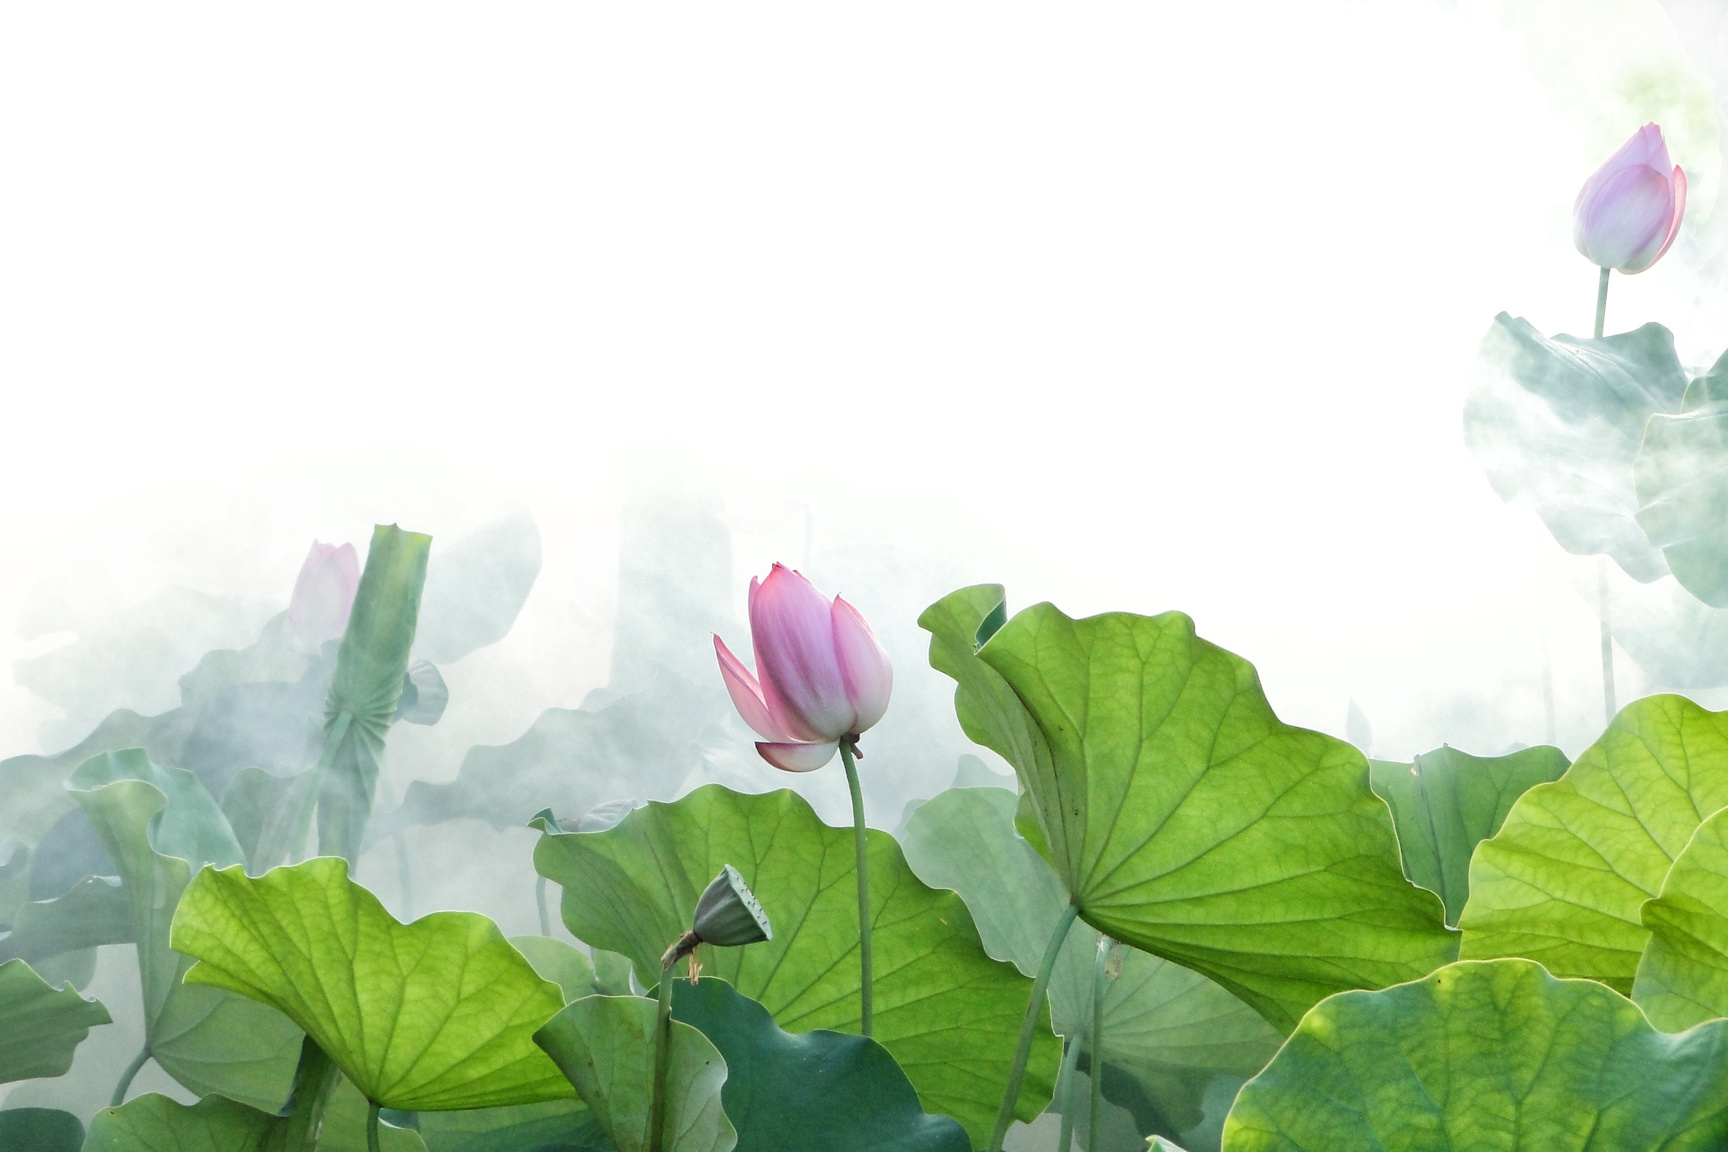 Lotus Flowers in Summer